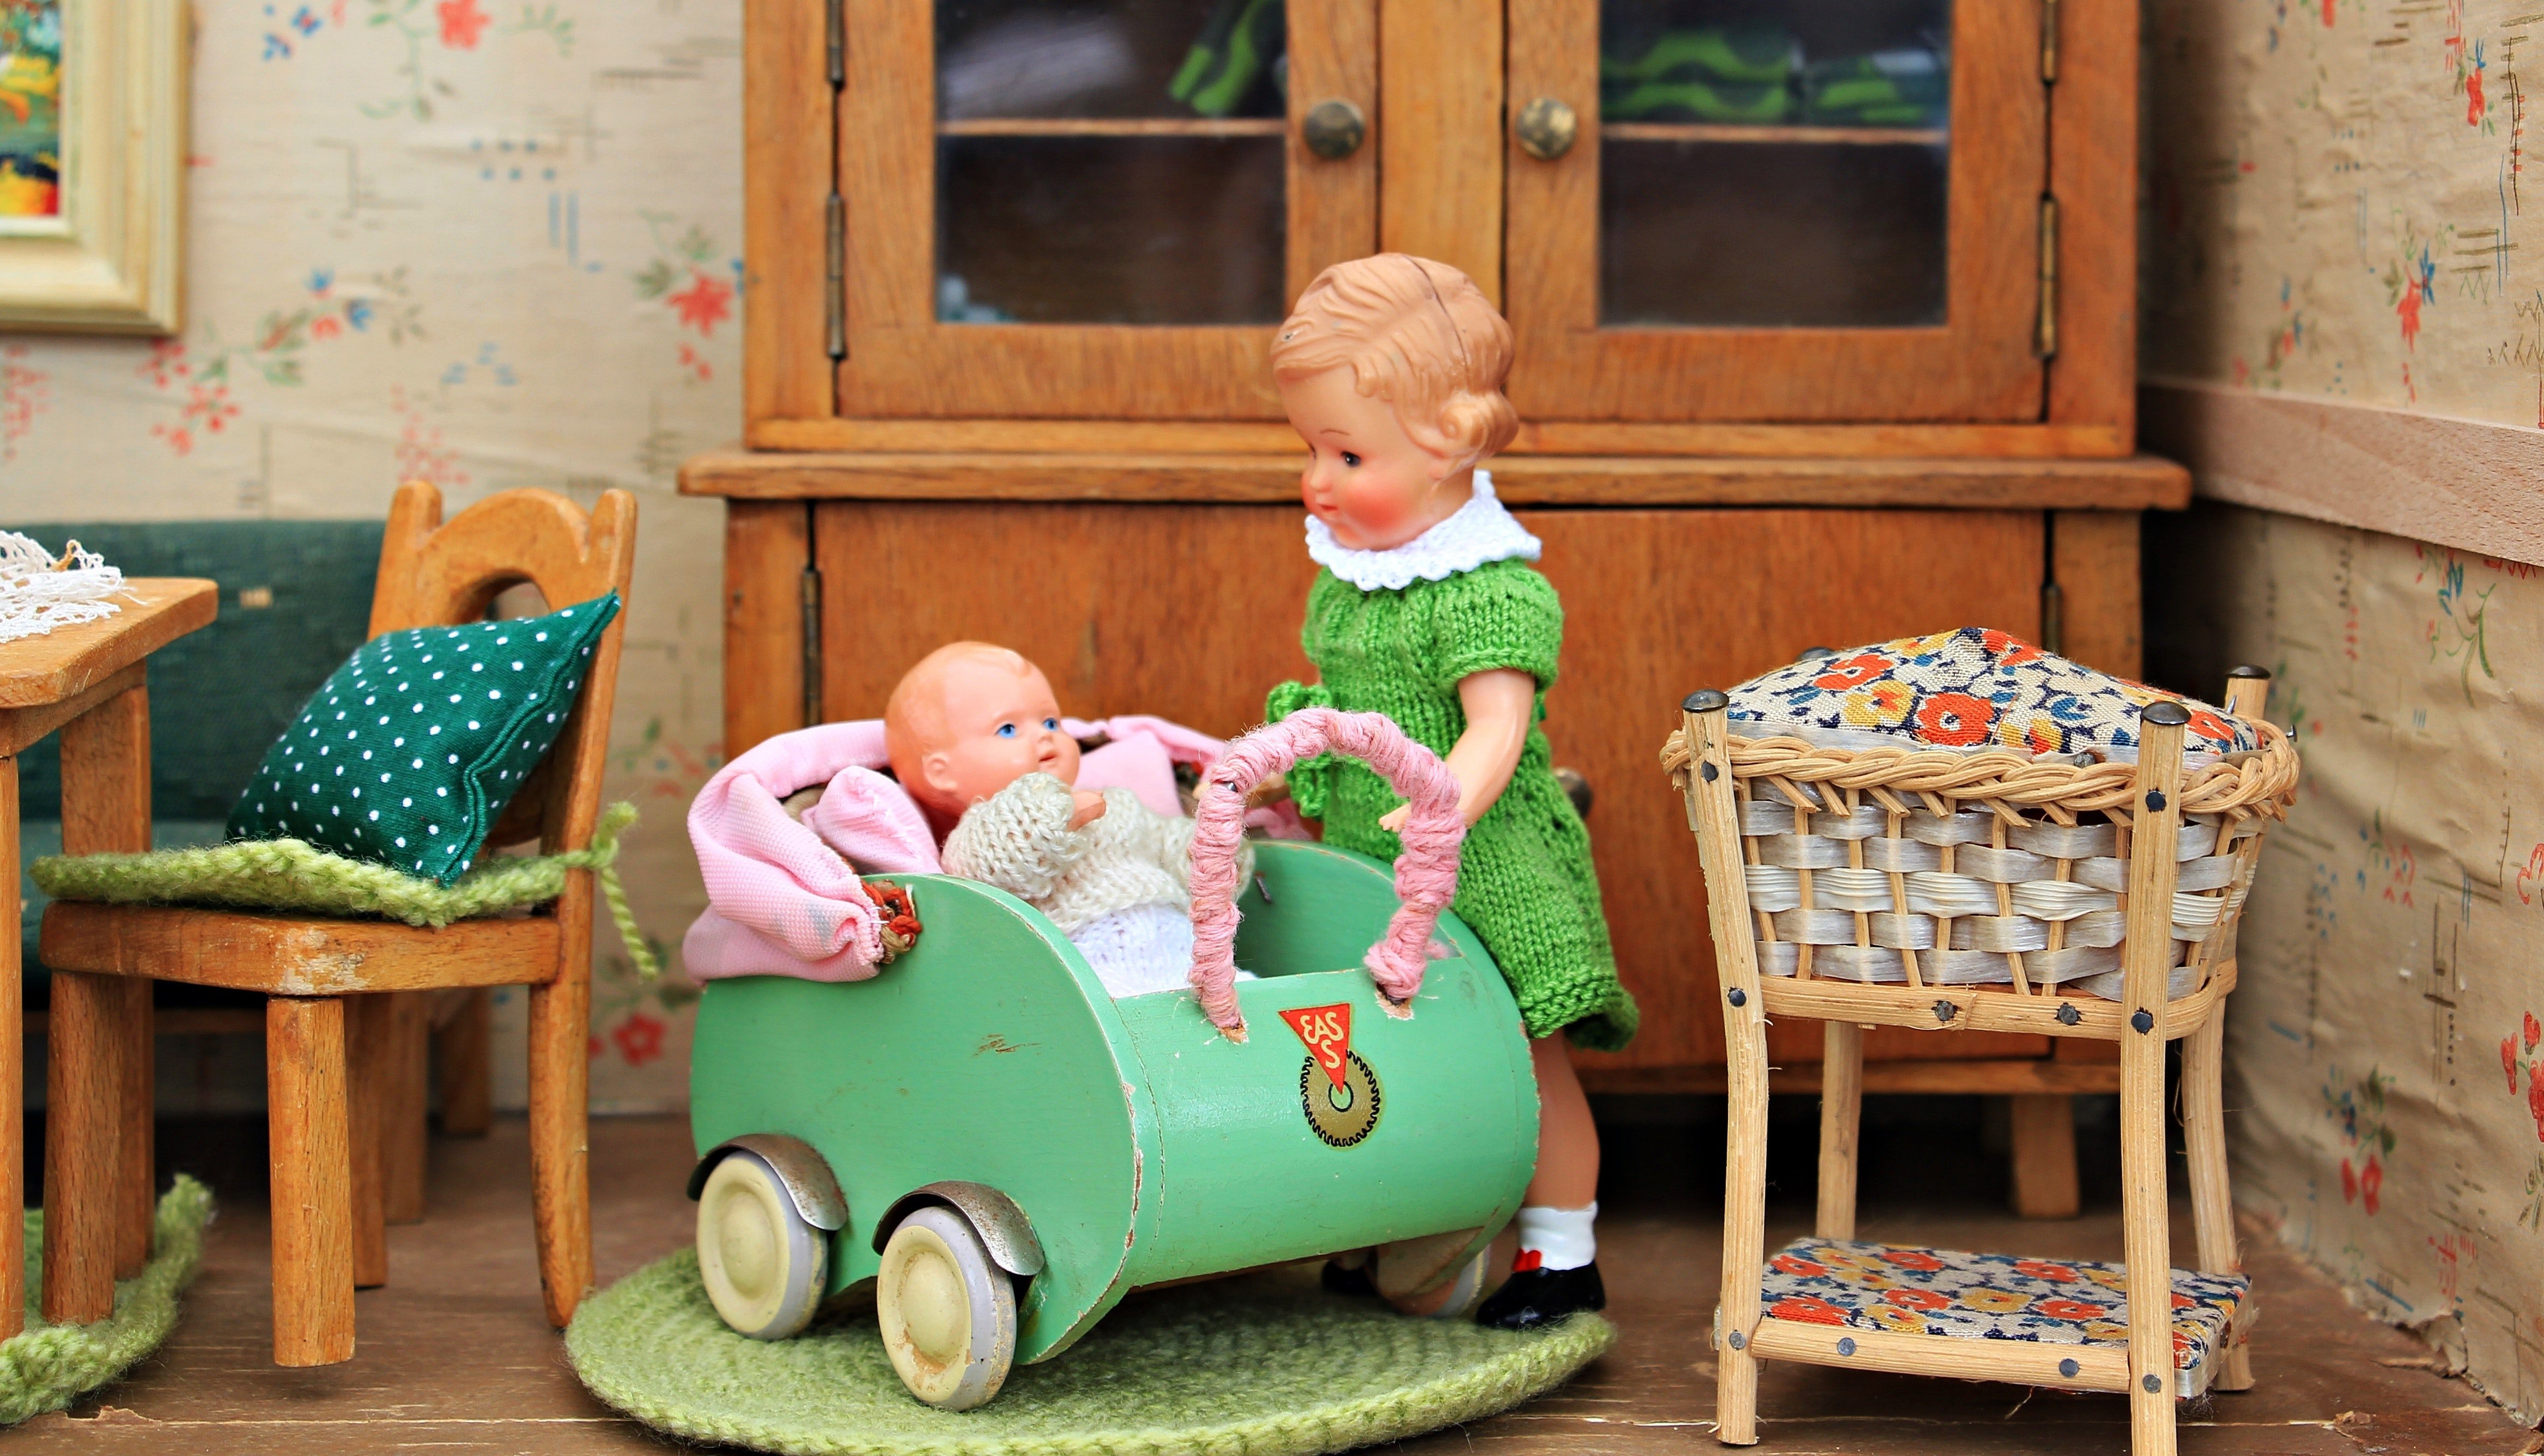 L'homme a admis avoir fabriqué les poupées de Patricia et Tina. | Source : Pexels